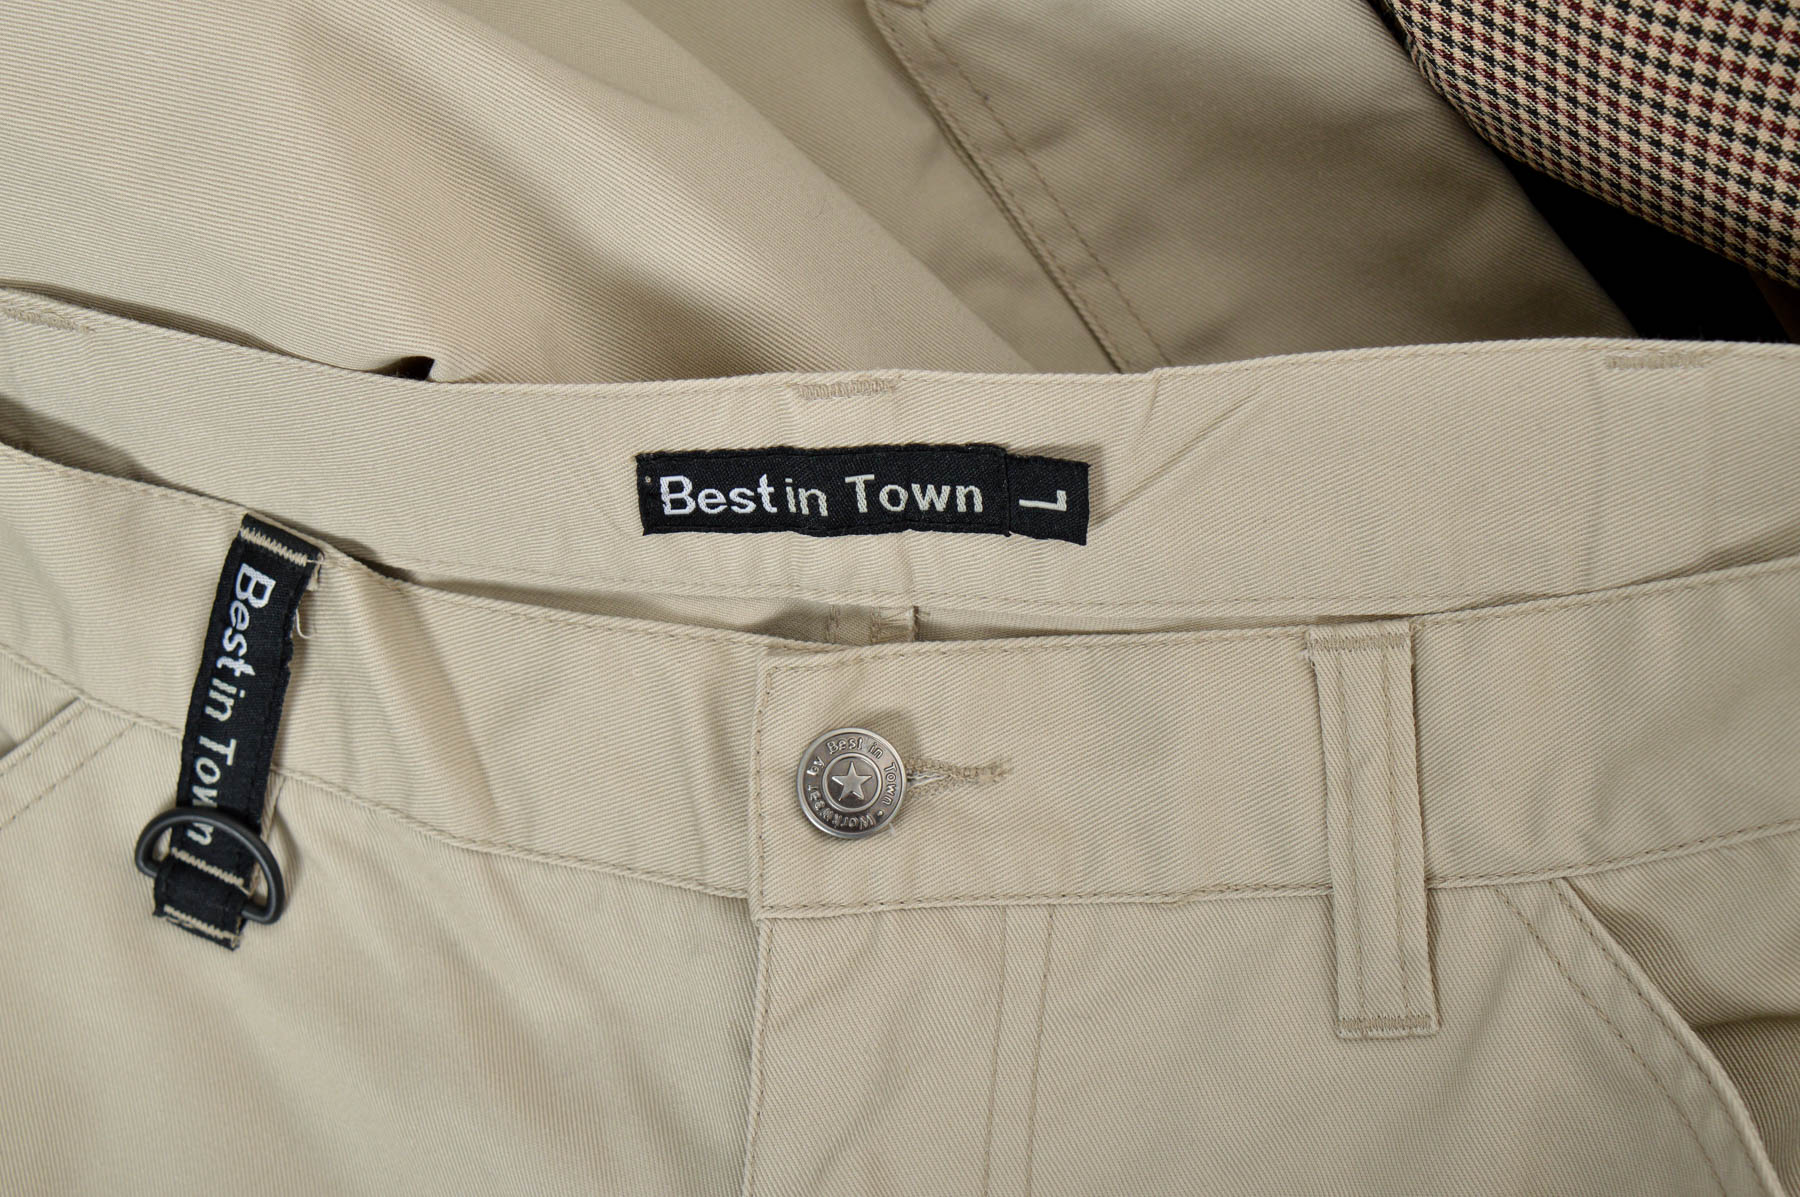 Pantalon pentru bărbați - Best in Town - 2